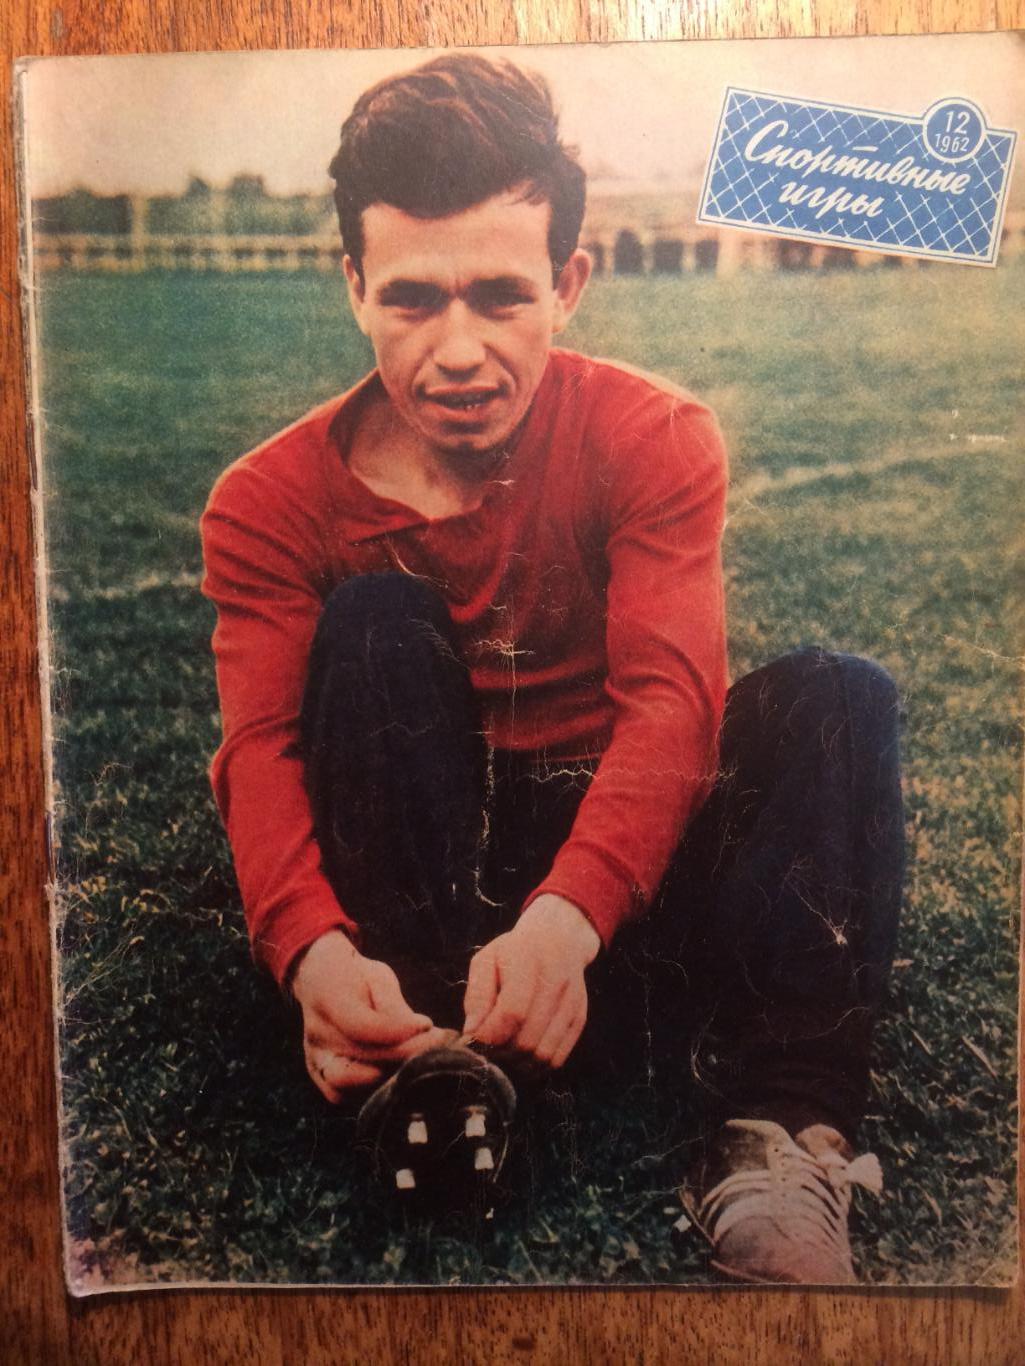 Журнал Спортивные игры №12 1962